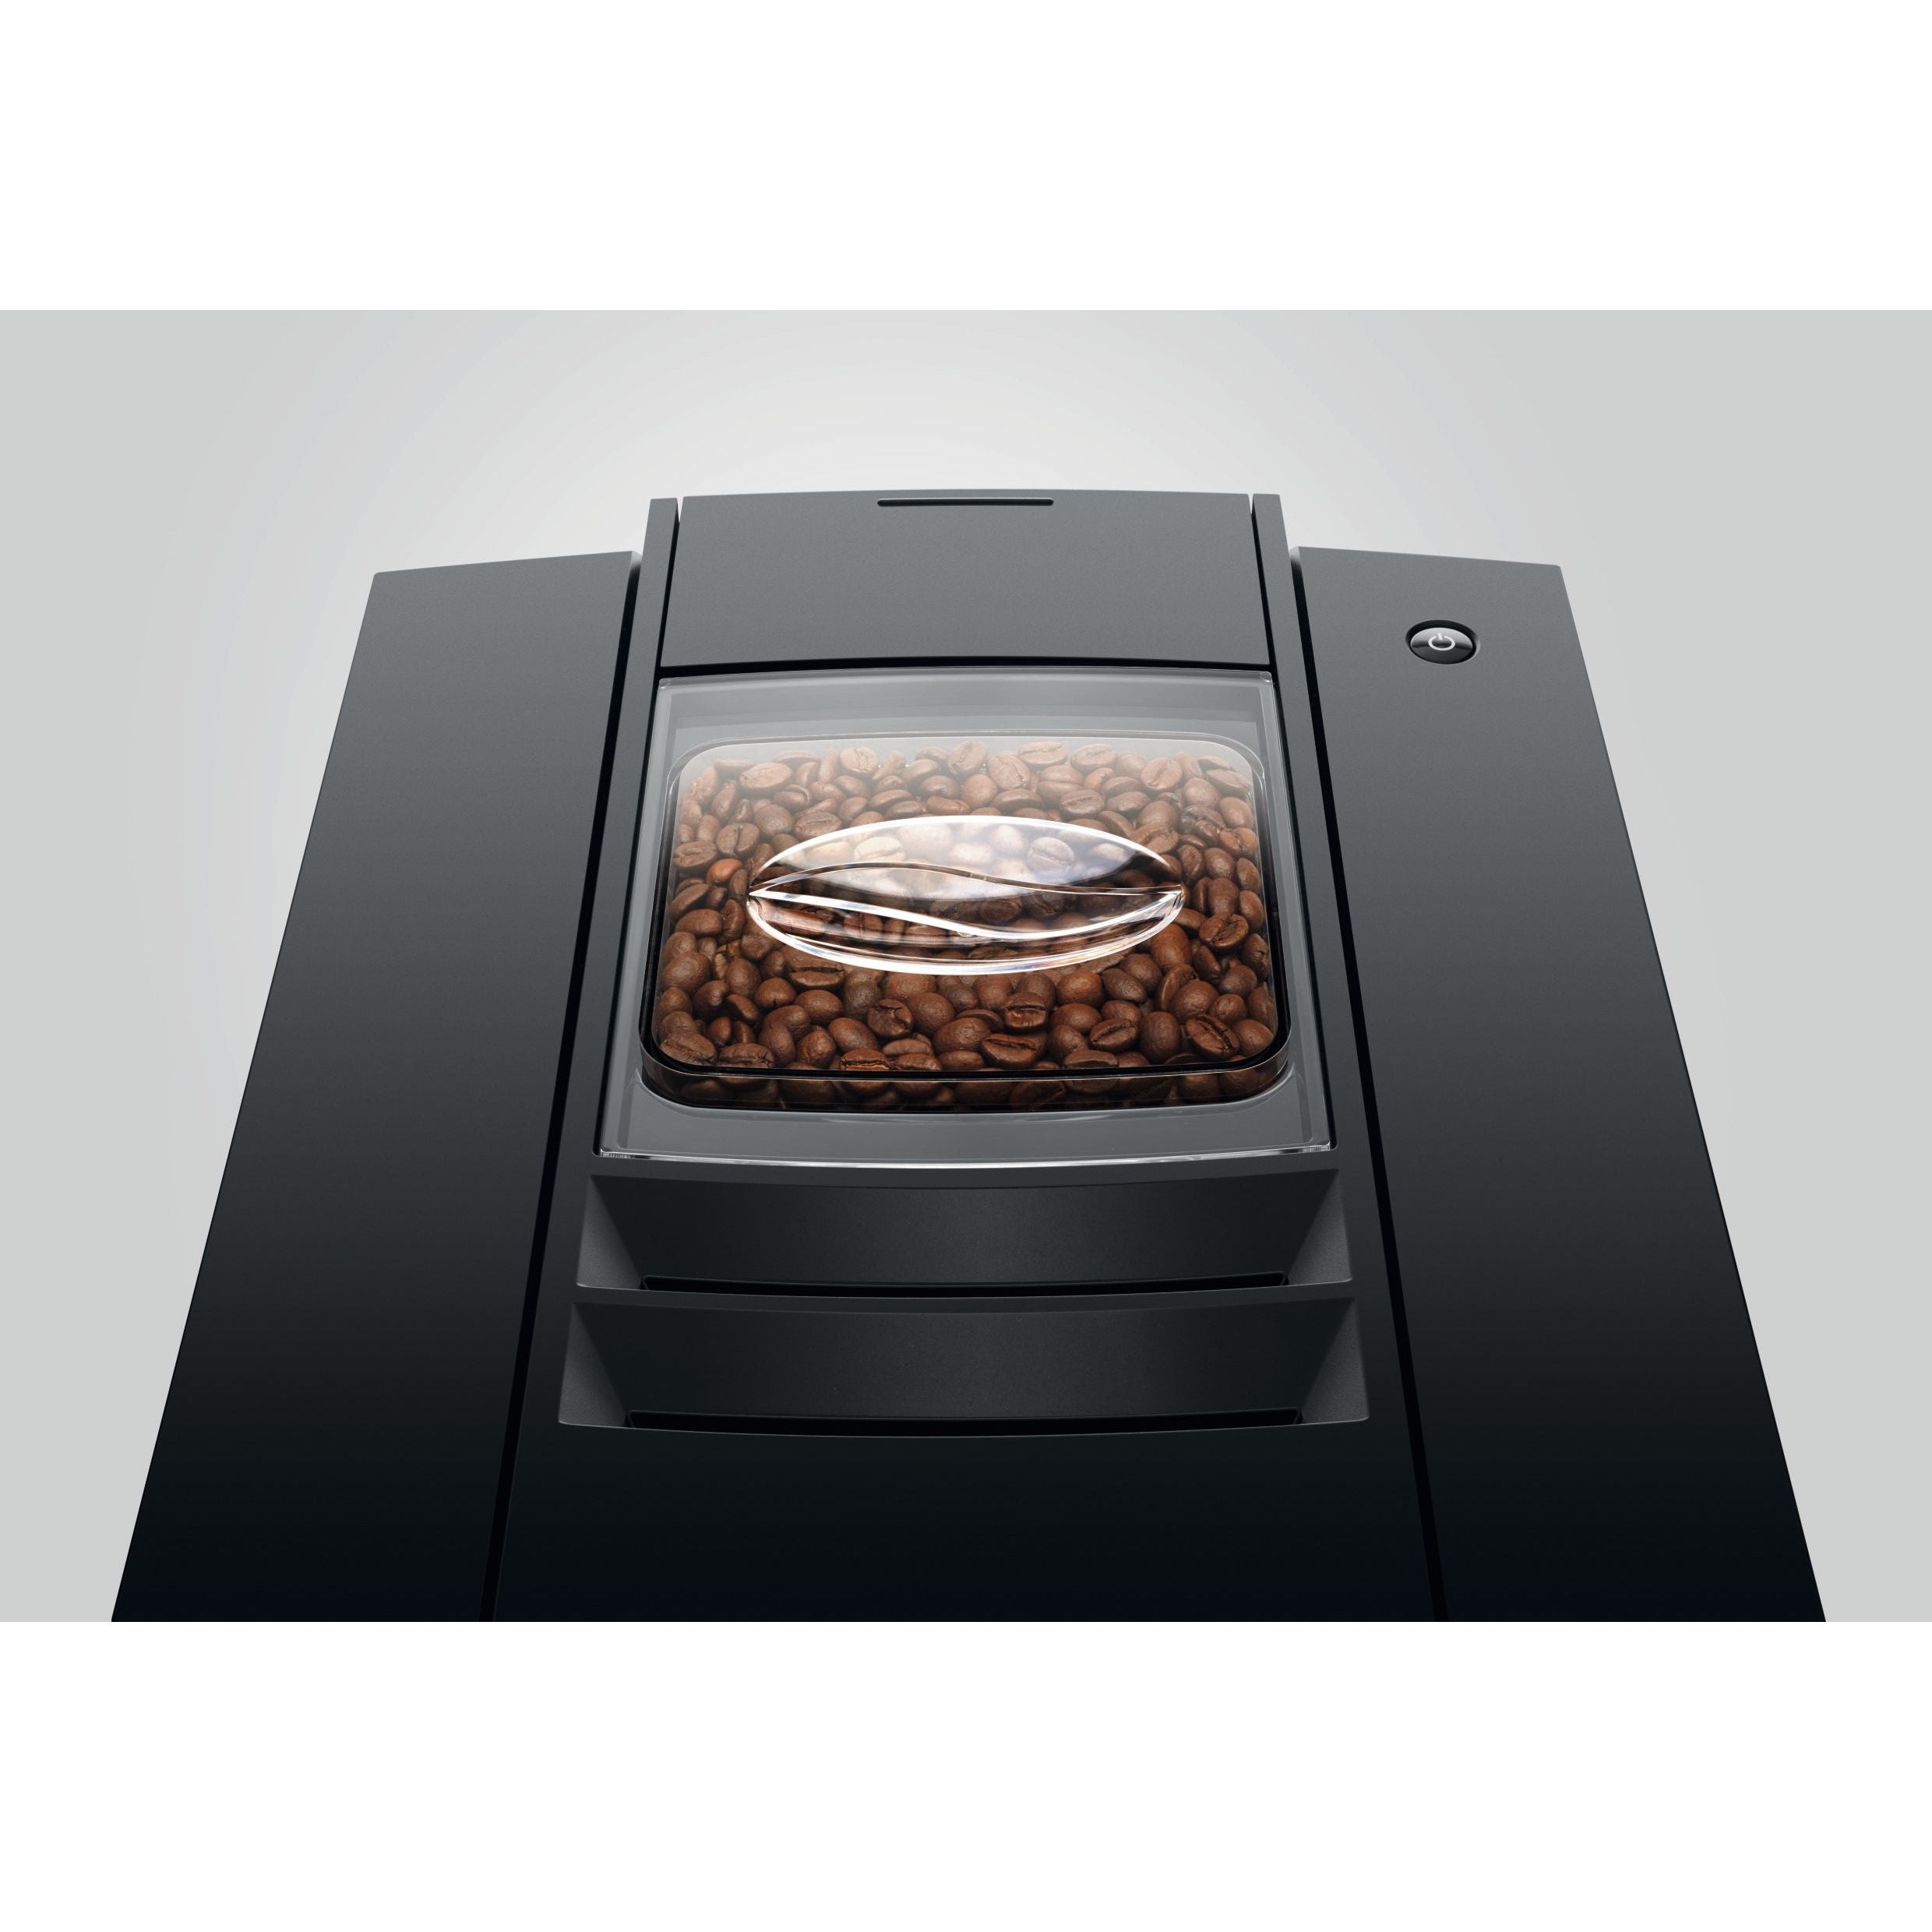 JURA E6 Dark Inox (EC) - Kaffeevollautomat 15439 Kaffeevollautomat JURA    - Rheinland.Coffee